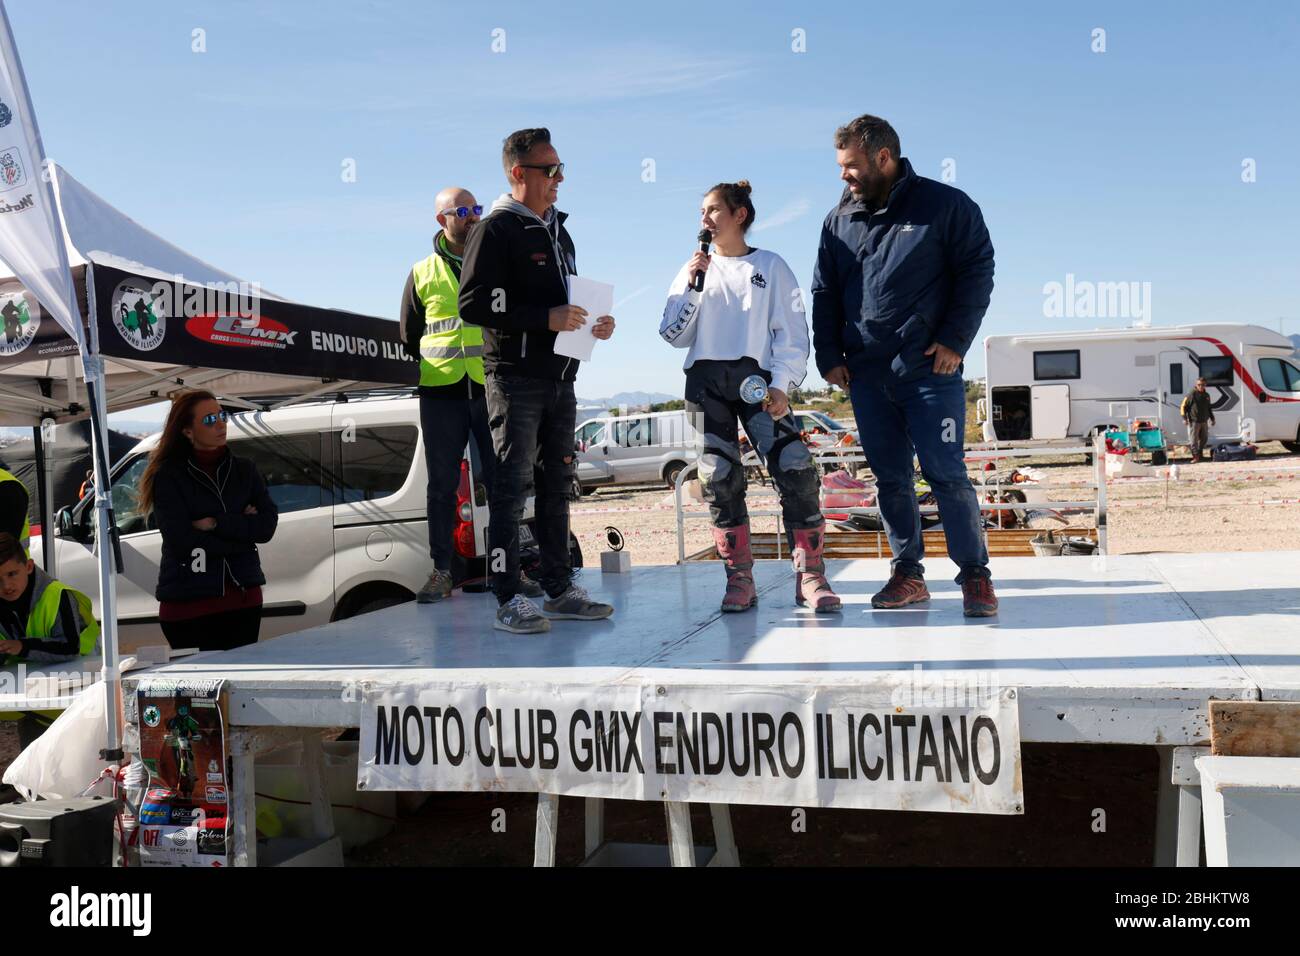 Elche, Espagne. 19 novembre 2019: Compétition Motocross dans la ville d'Elche, Espagne. Banque D'Images